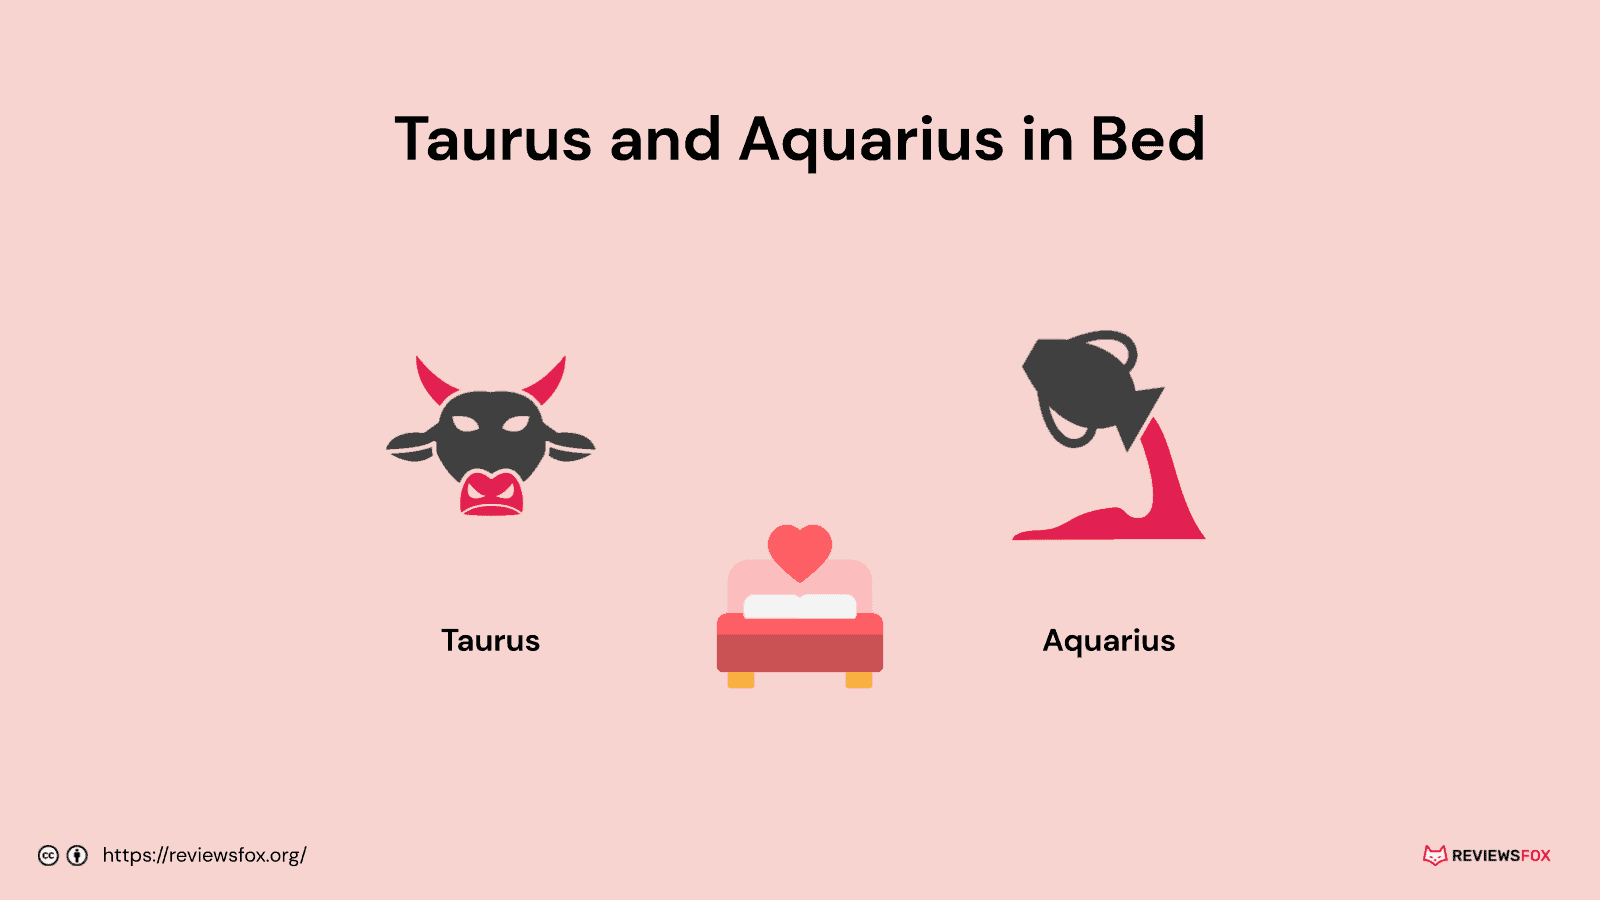 Taurus and Aquarius in bed